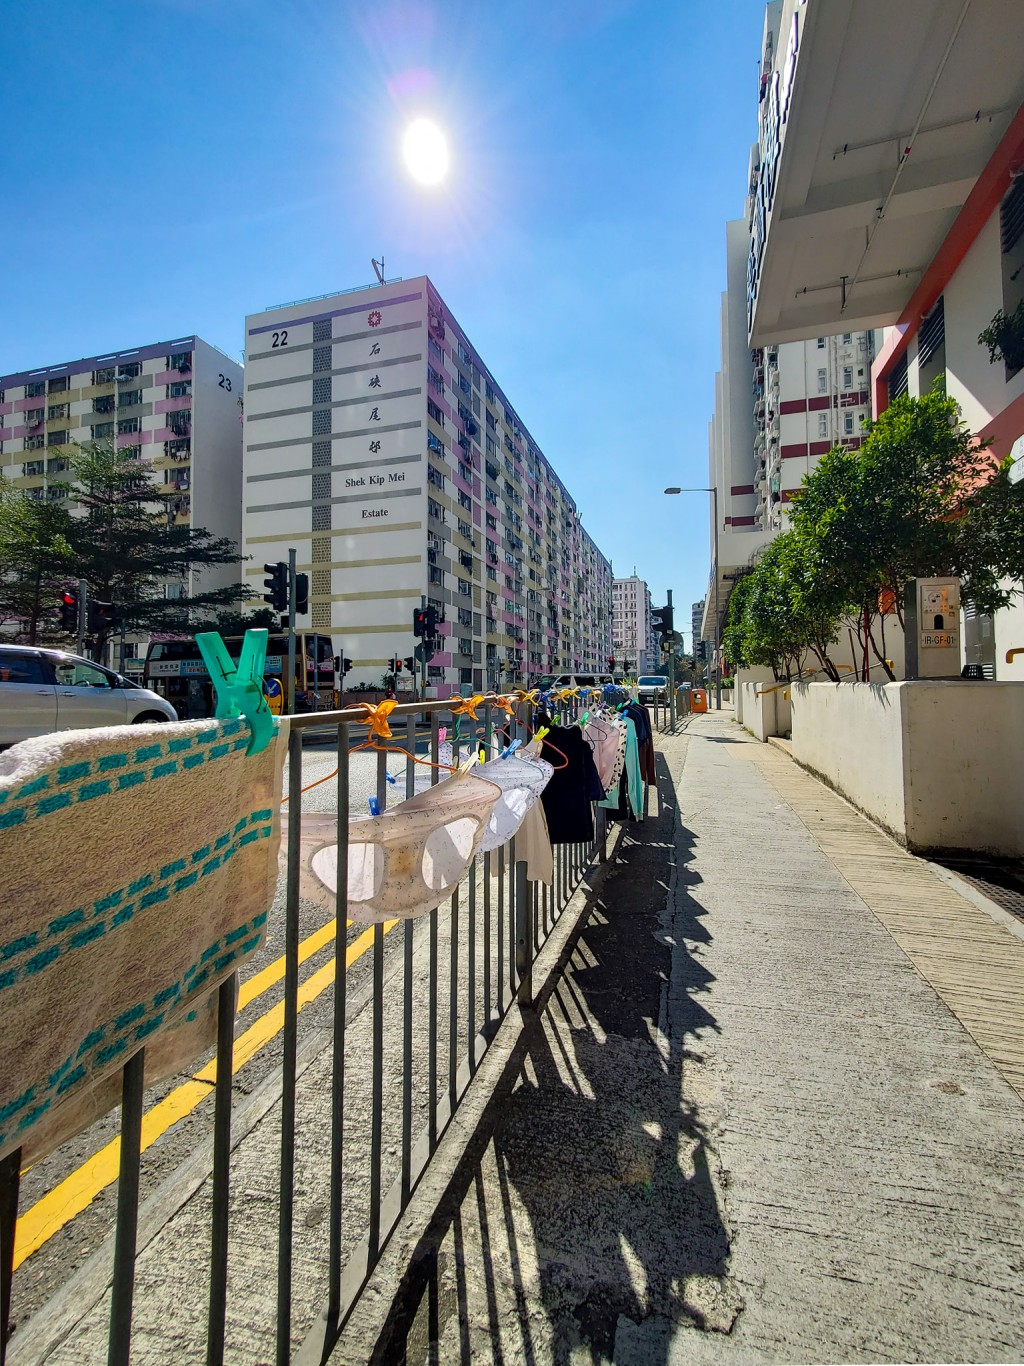 在路邊的欄杆上掛有多件衣物，包括數條內褲及上衣等。「香港風景攝影會」FB